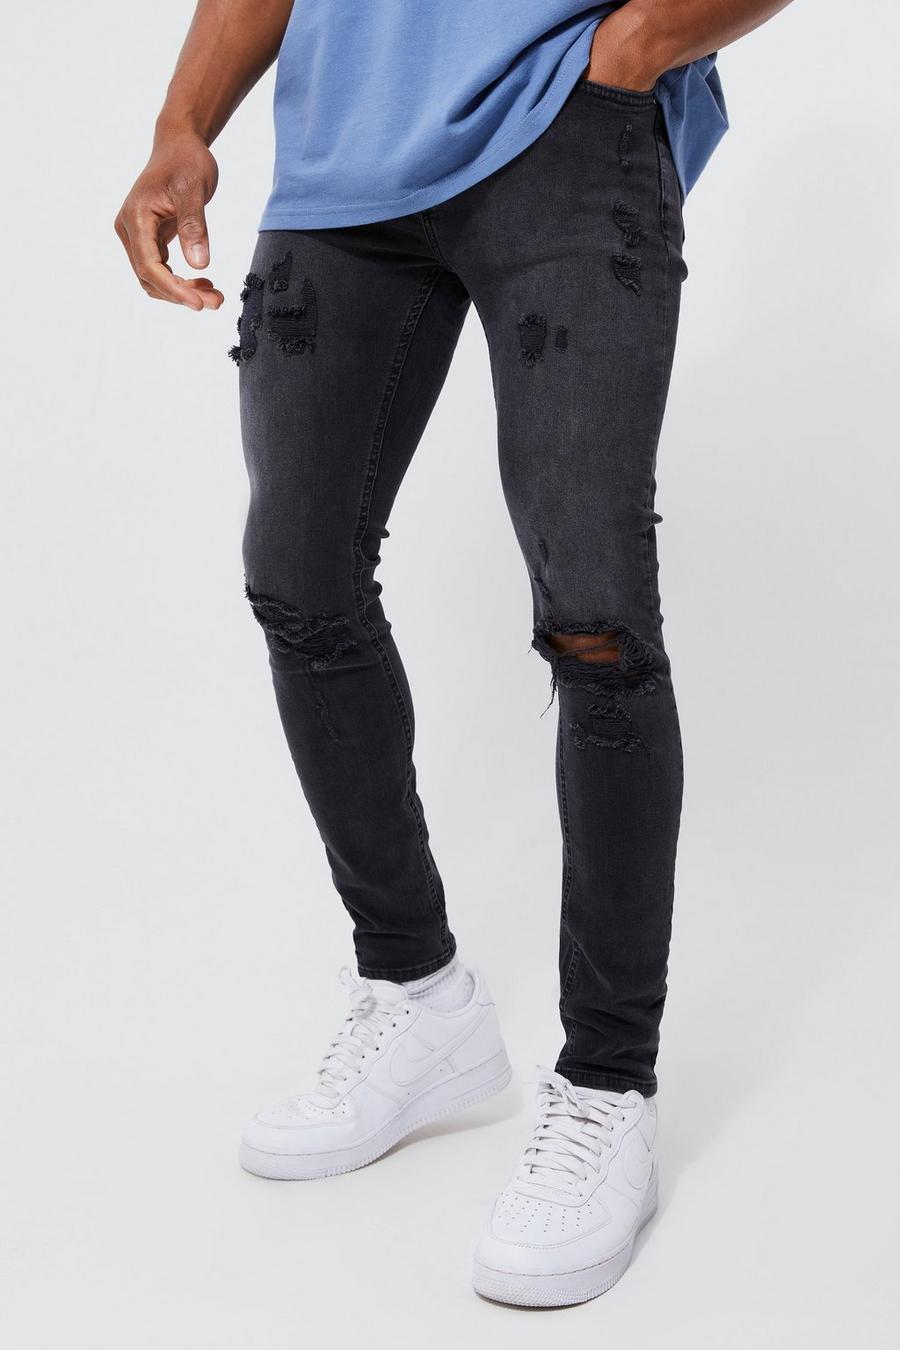 שחור דהוי ג'ינס סקיני נמתח עם קרעים גדולים בברך